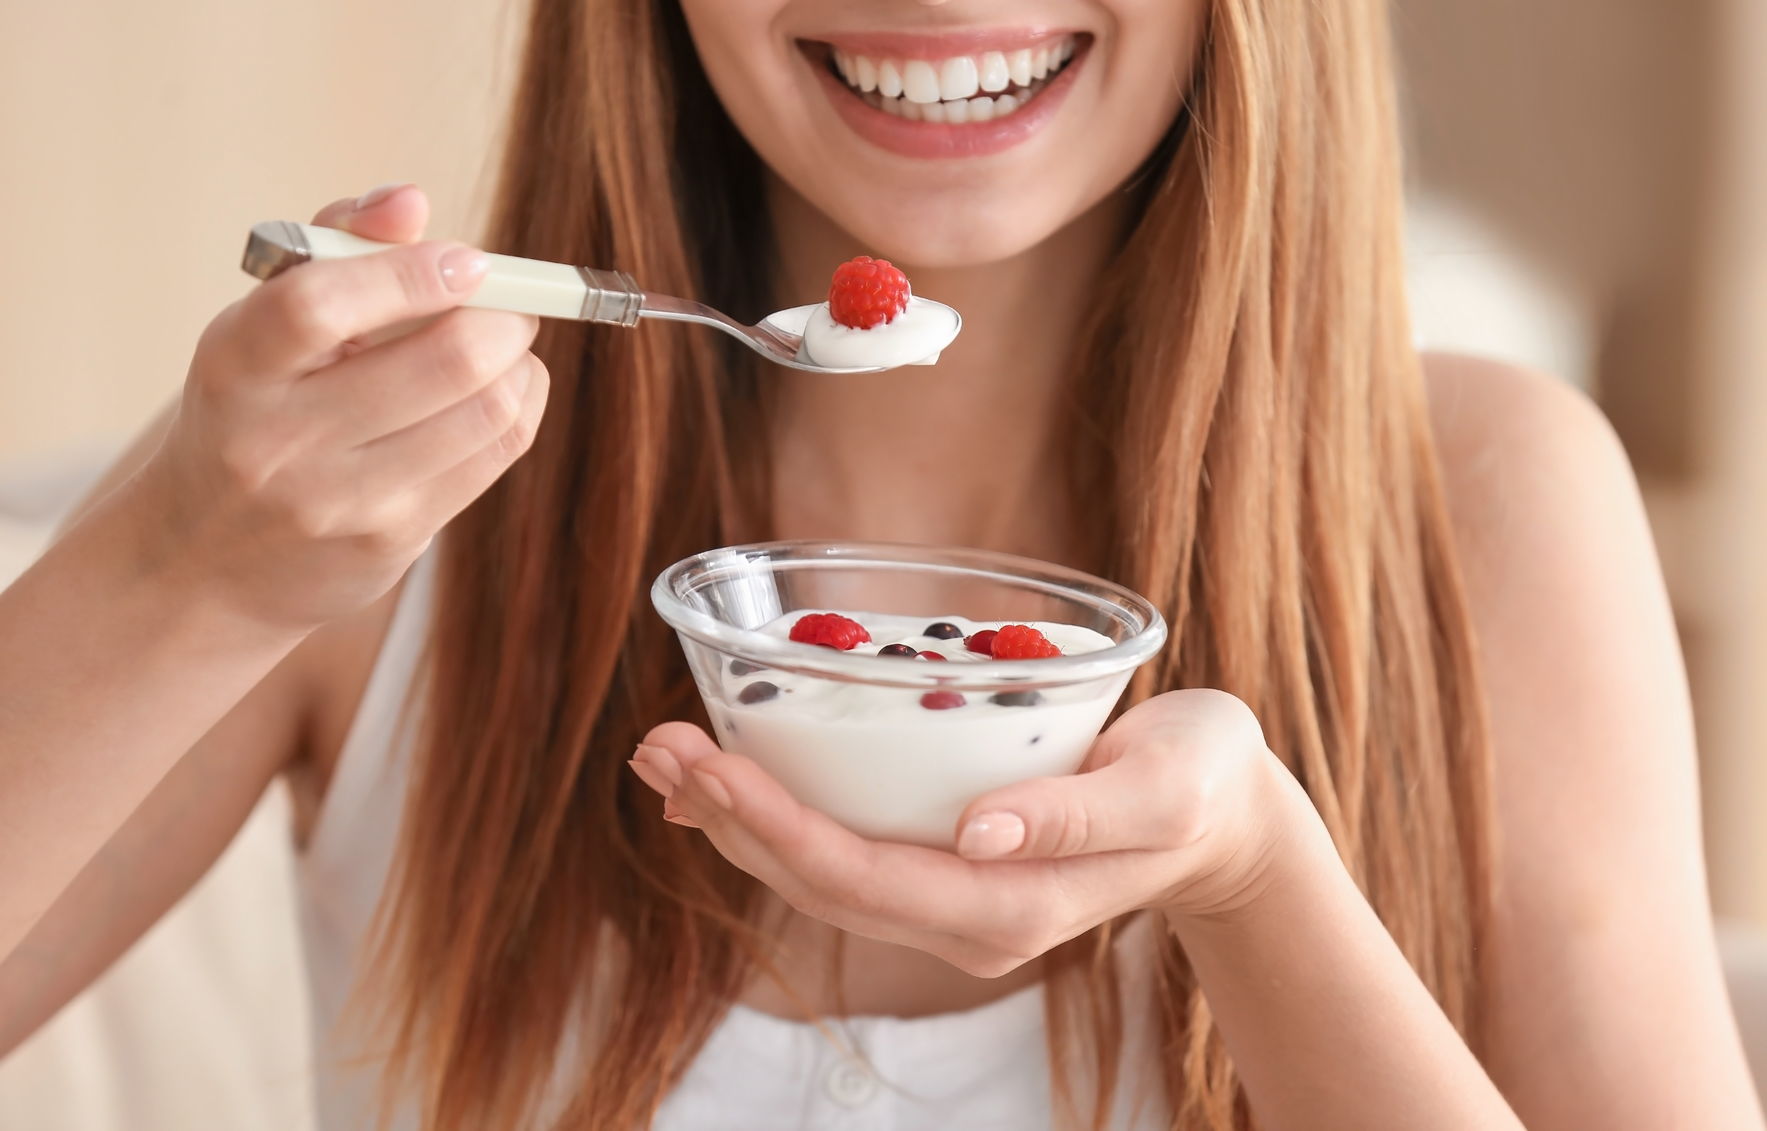 Dieta cu iaurt, accesibilă și foarte eficientă. Slăbește în doar 7 zile de regim